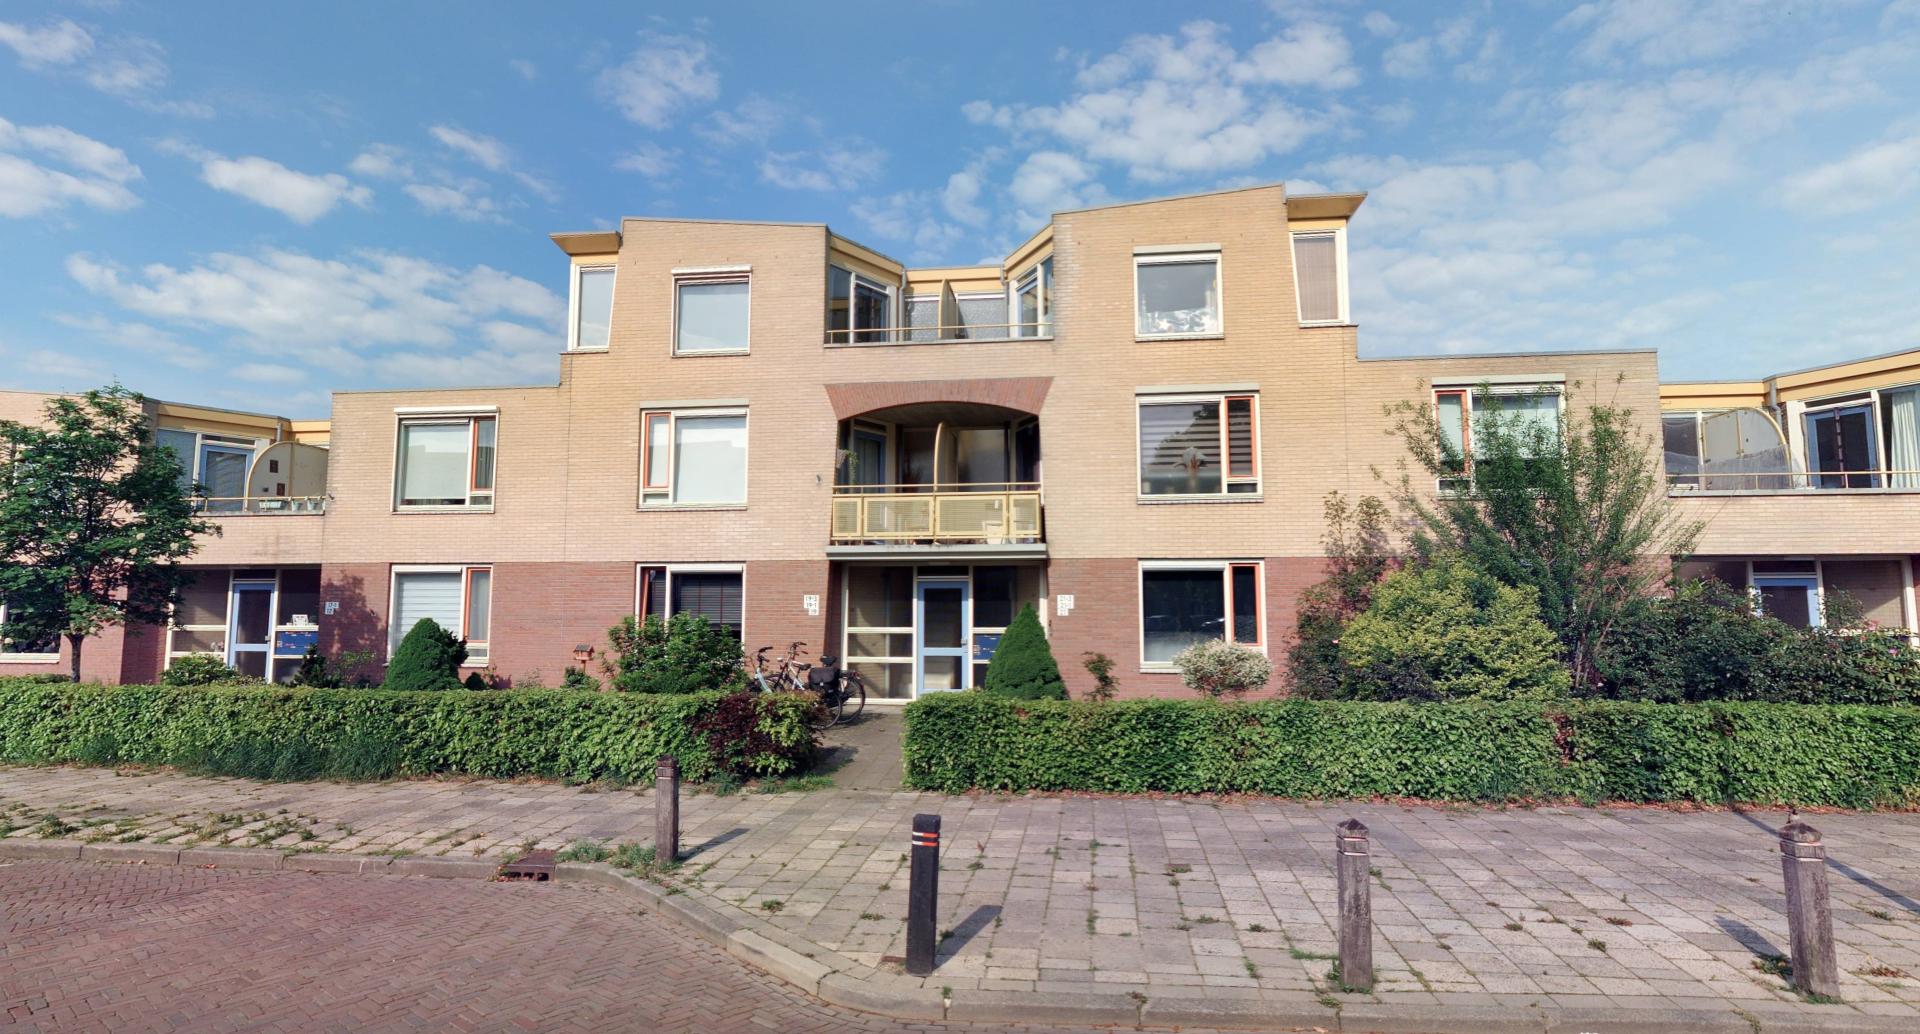 Floresstraat 21, 7556 TB Hengelo, Nederland